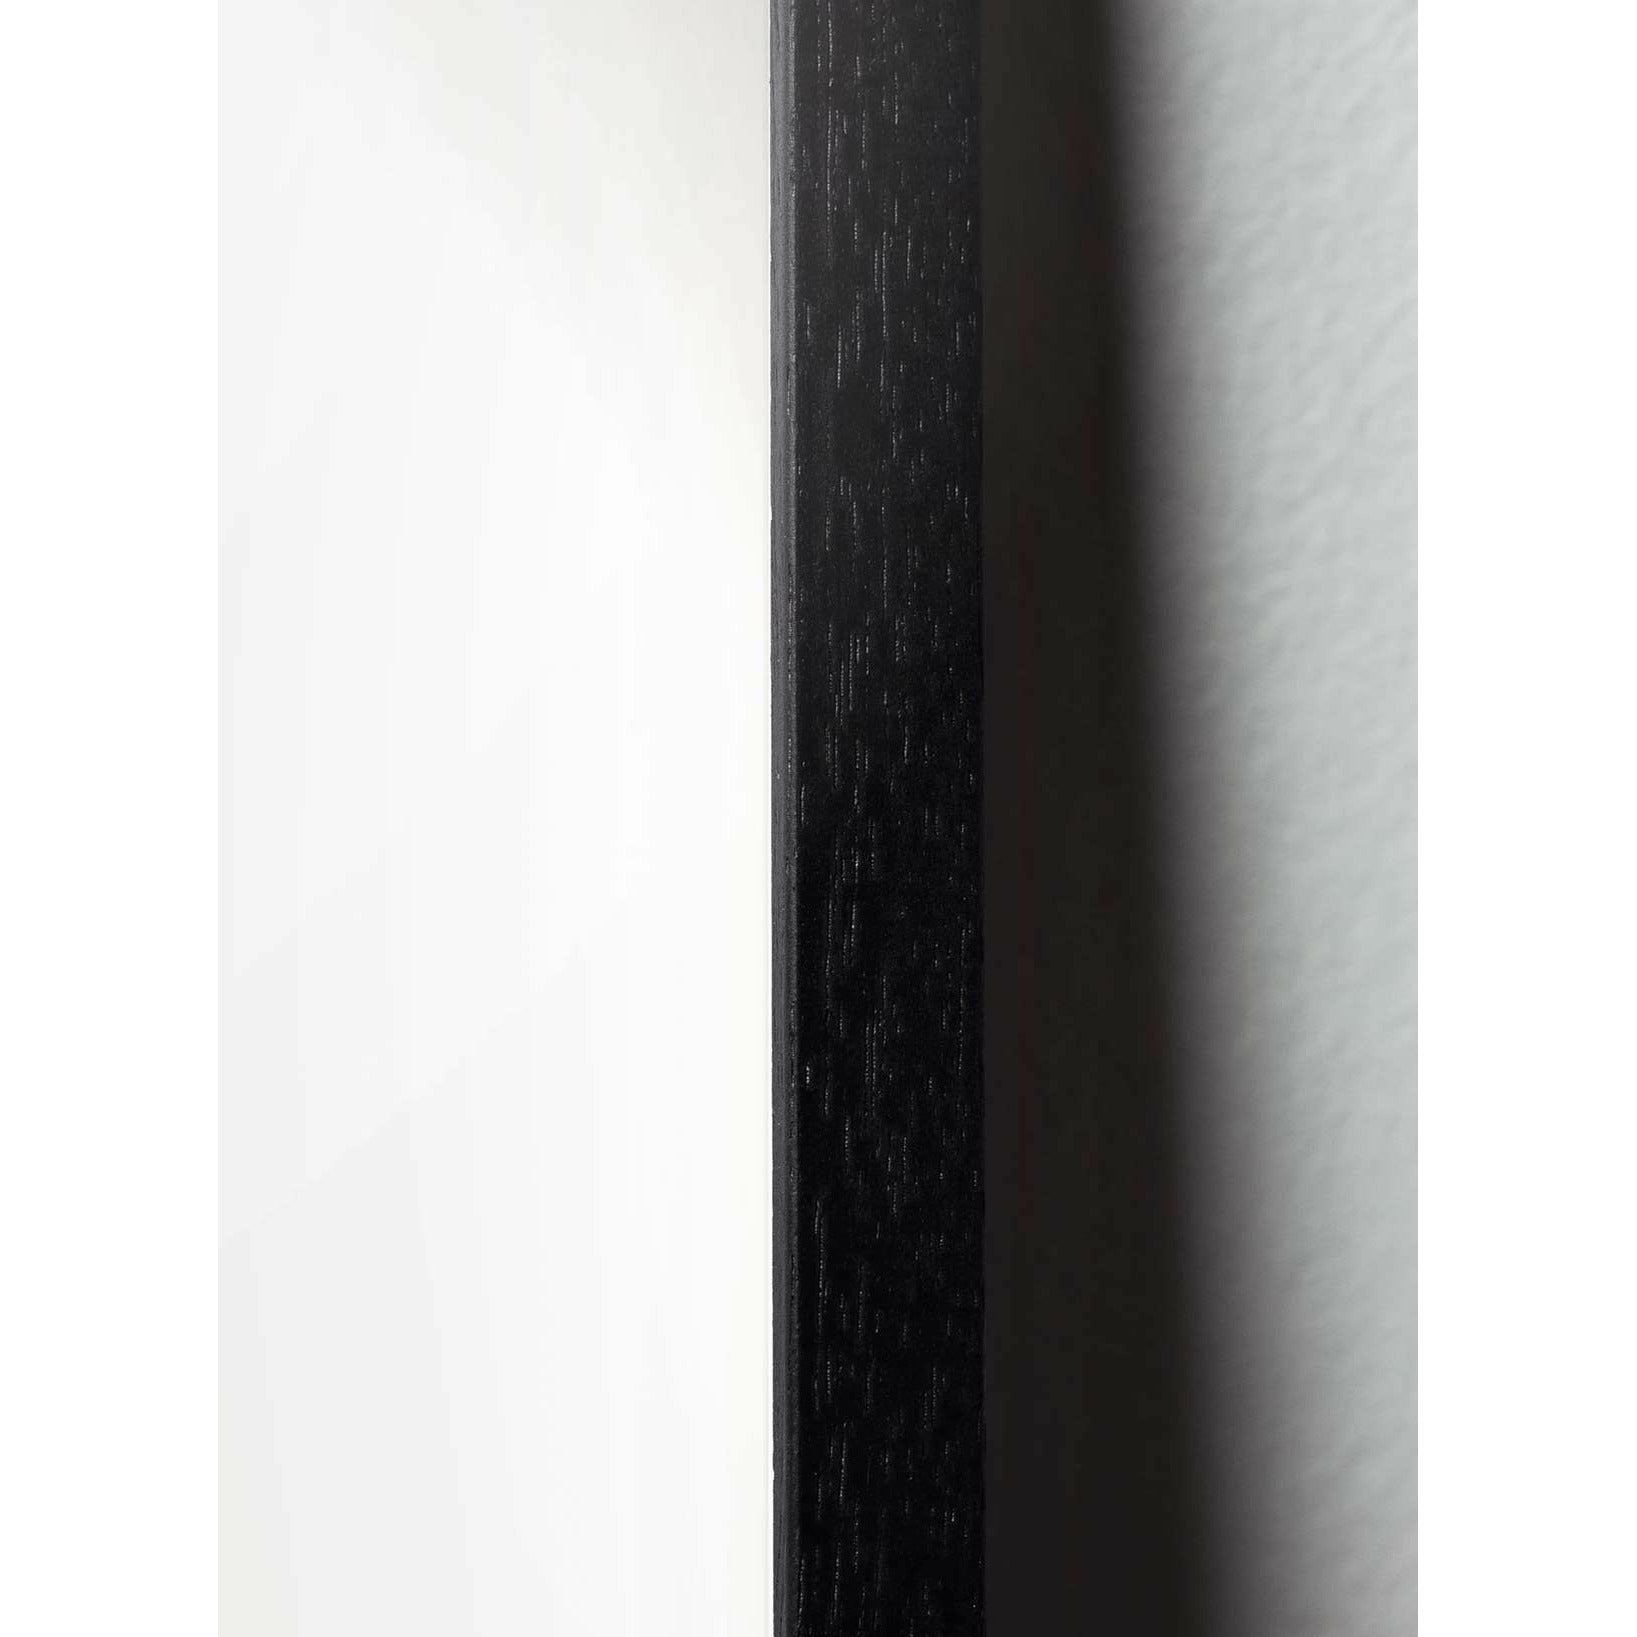 Plakát na linii borovice kužele, rám v černém lakovaném dřevu A5, bílé pozadí